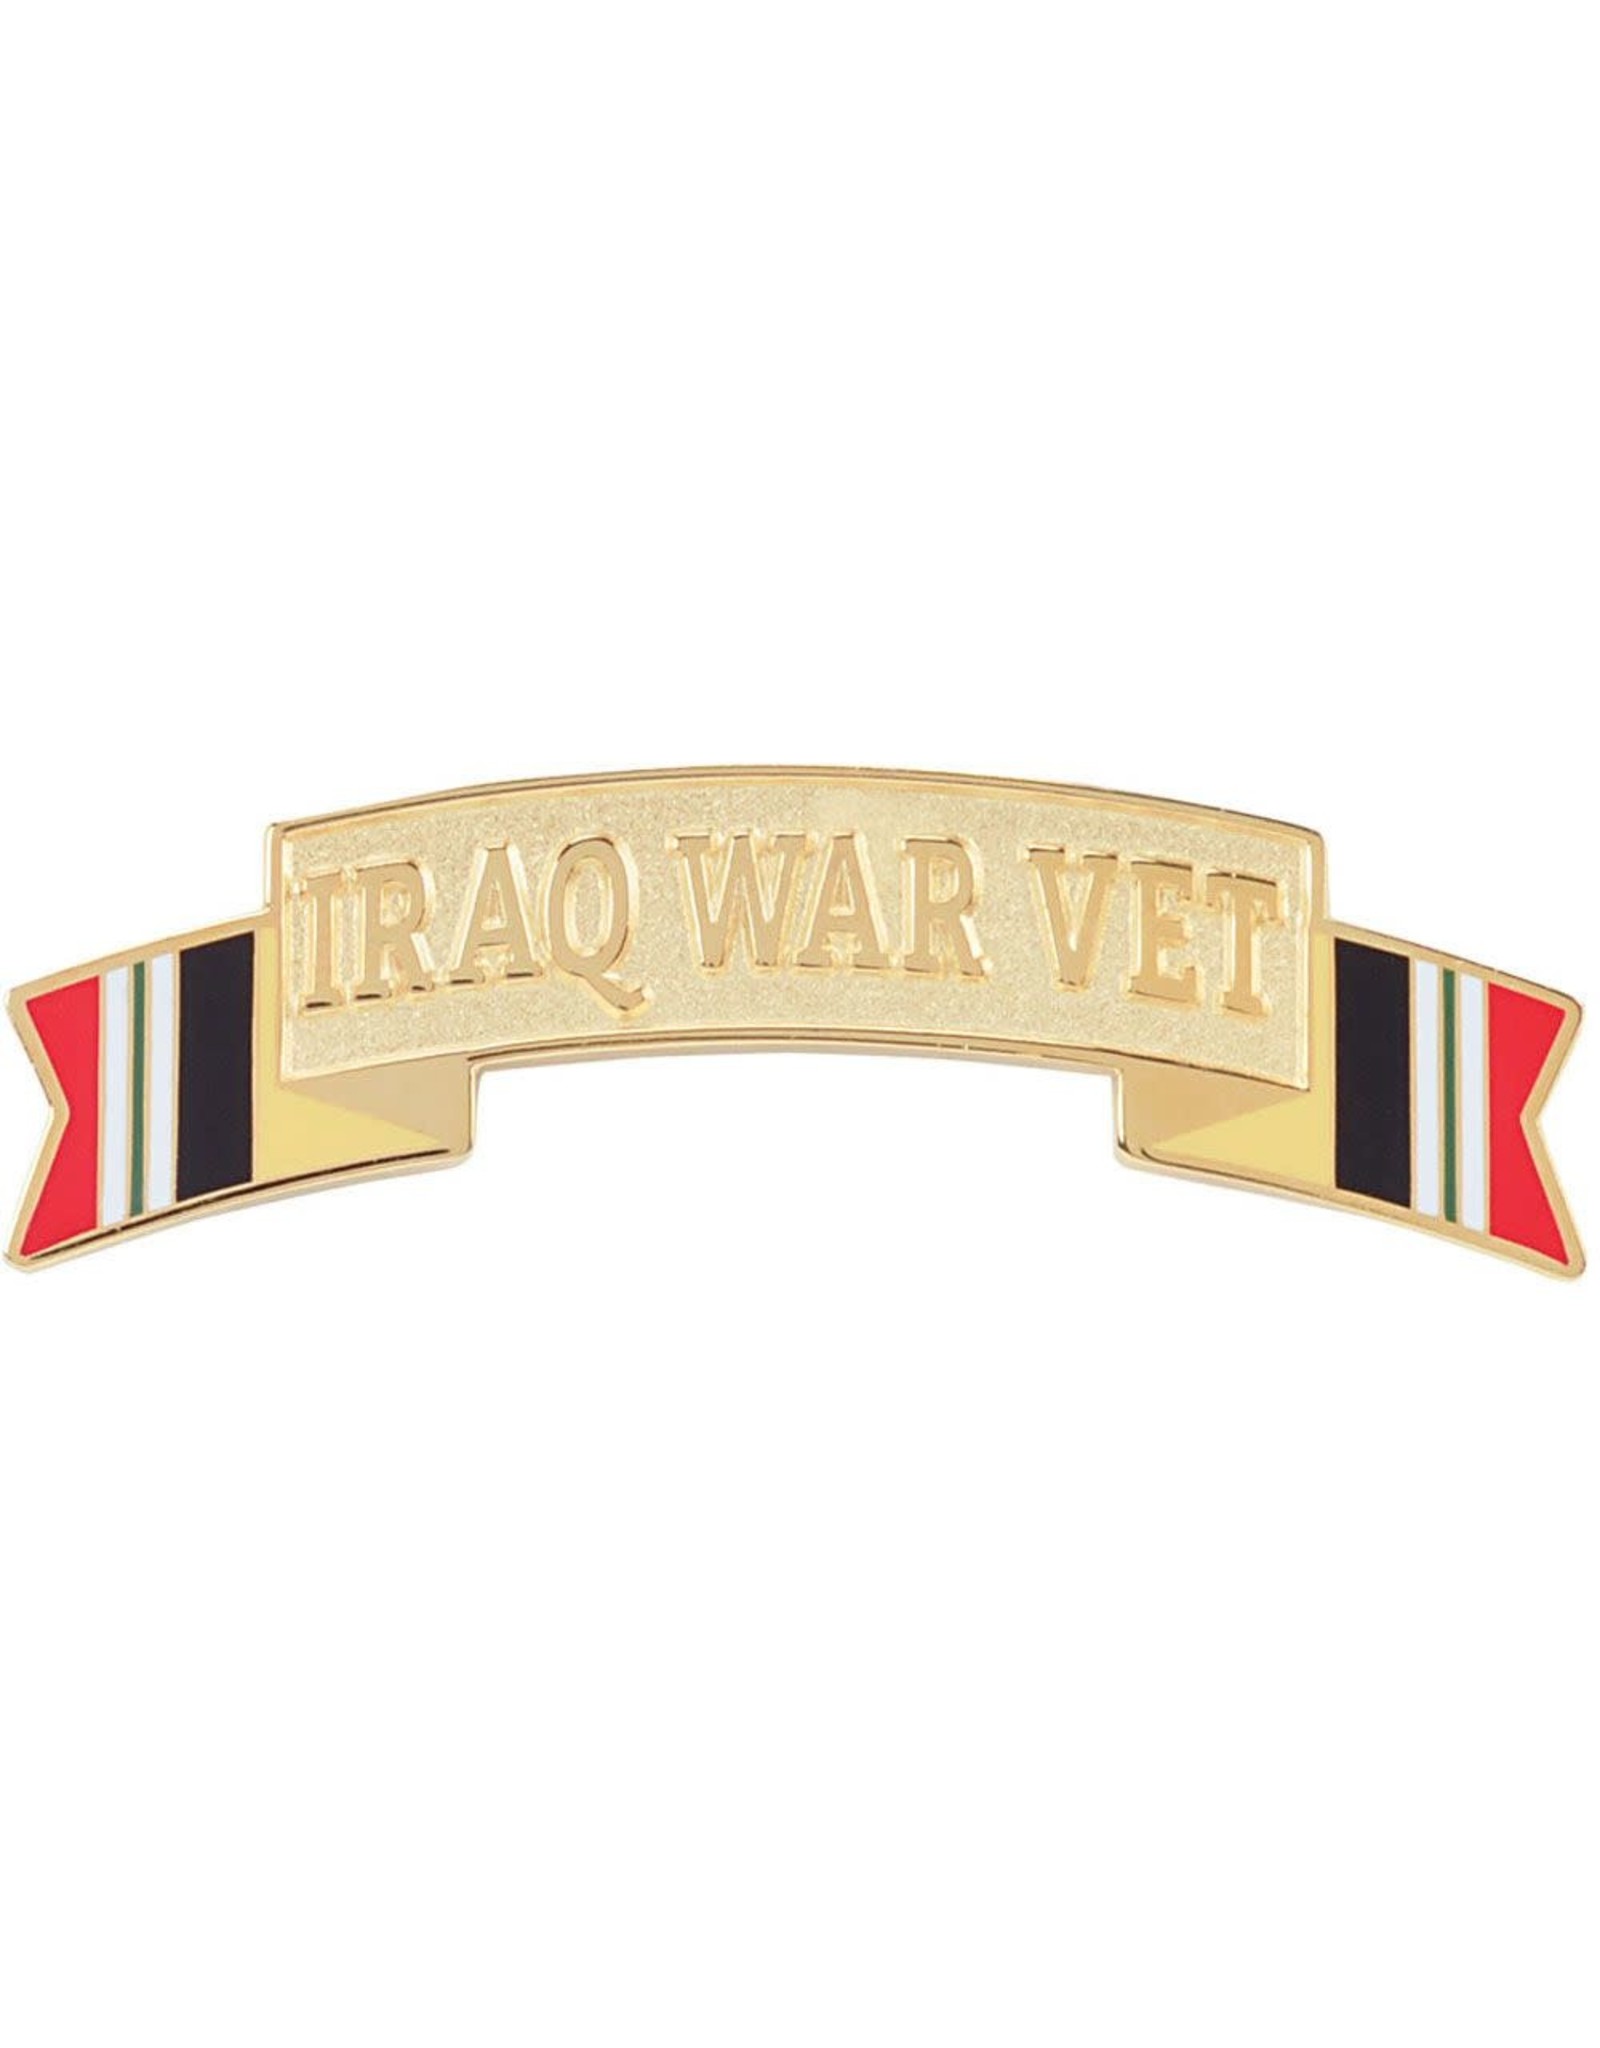 Iraq War Vet Pin